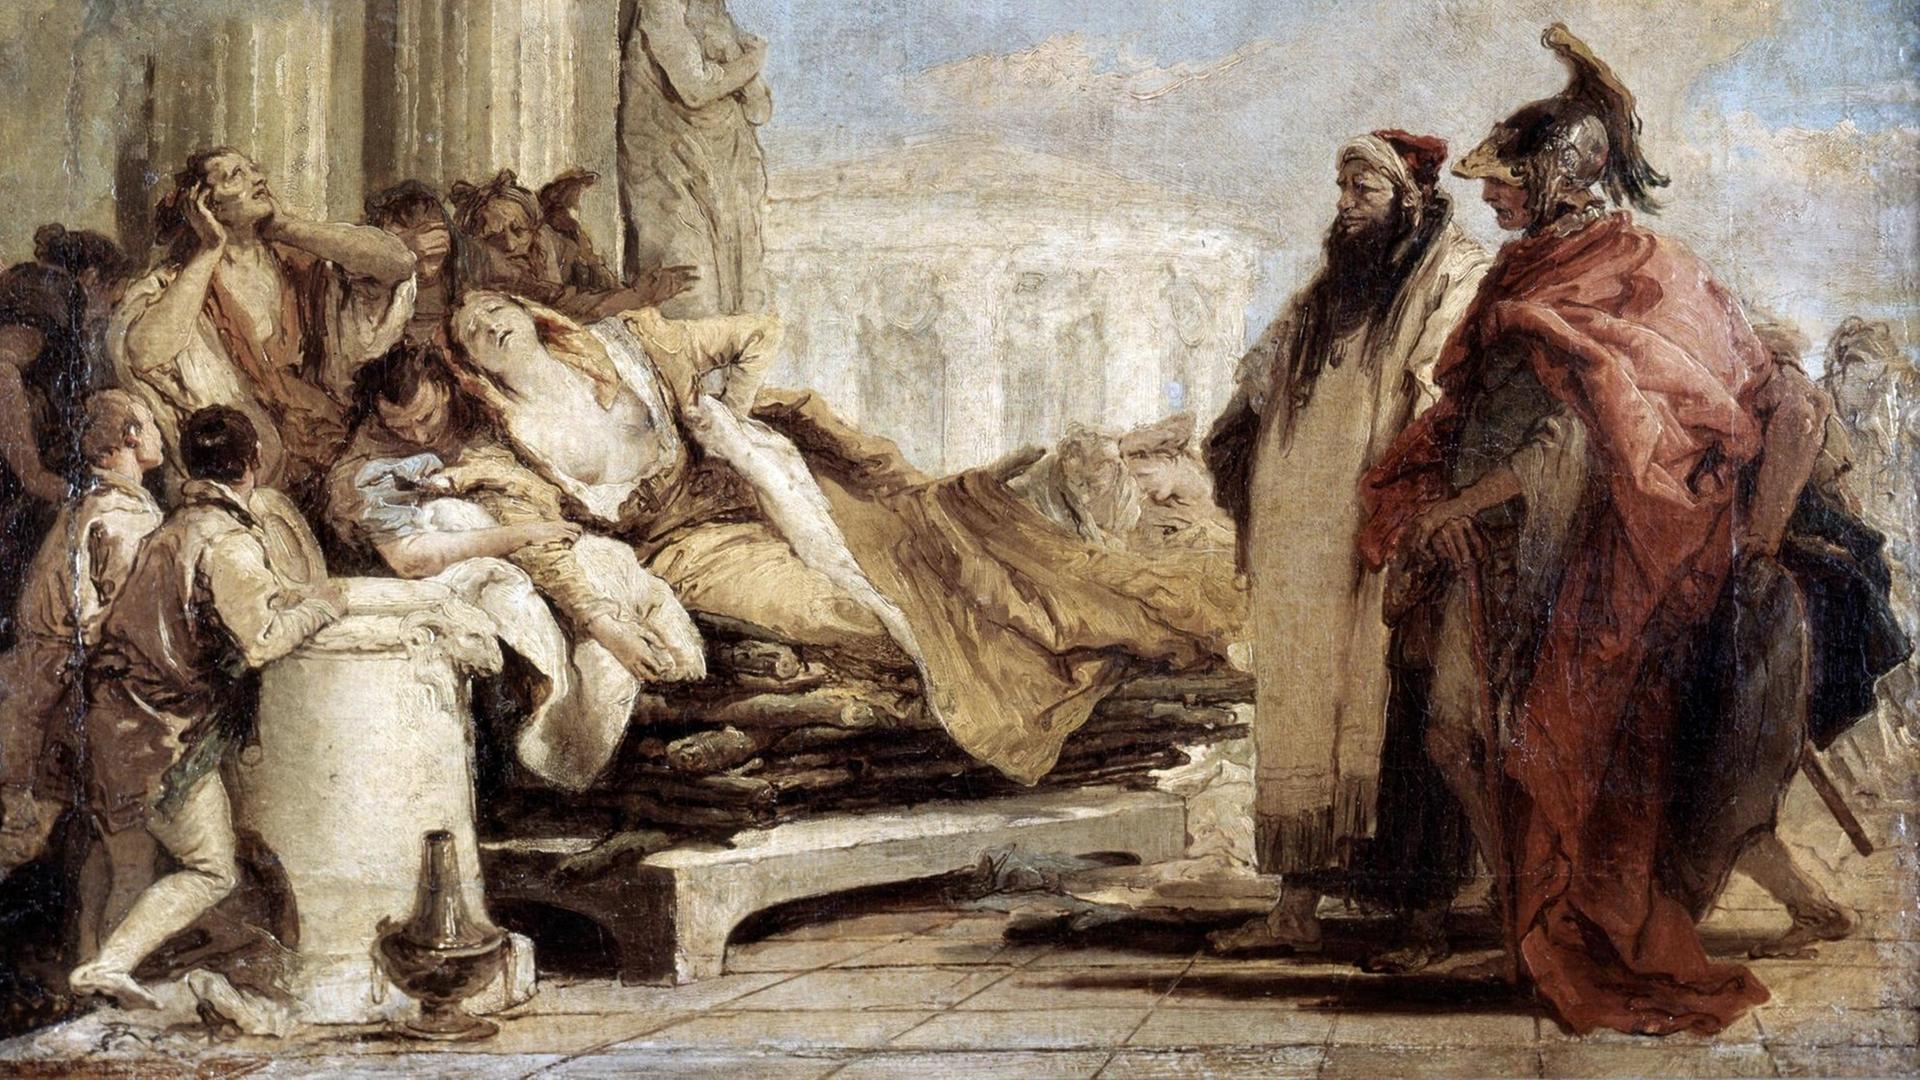 Eine aufgebahrte, sterbende Frau in einem antiken Setting, umringt von Männern